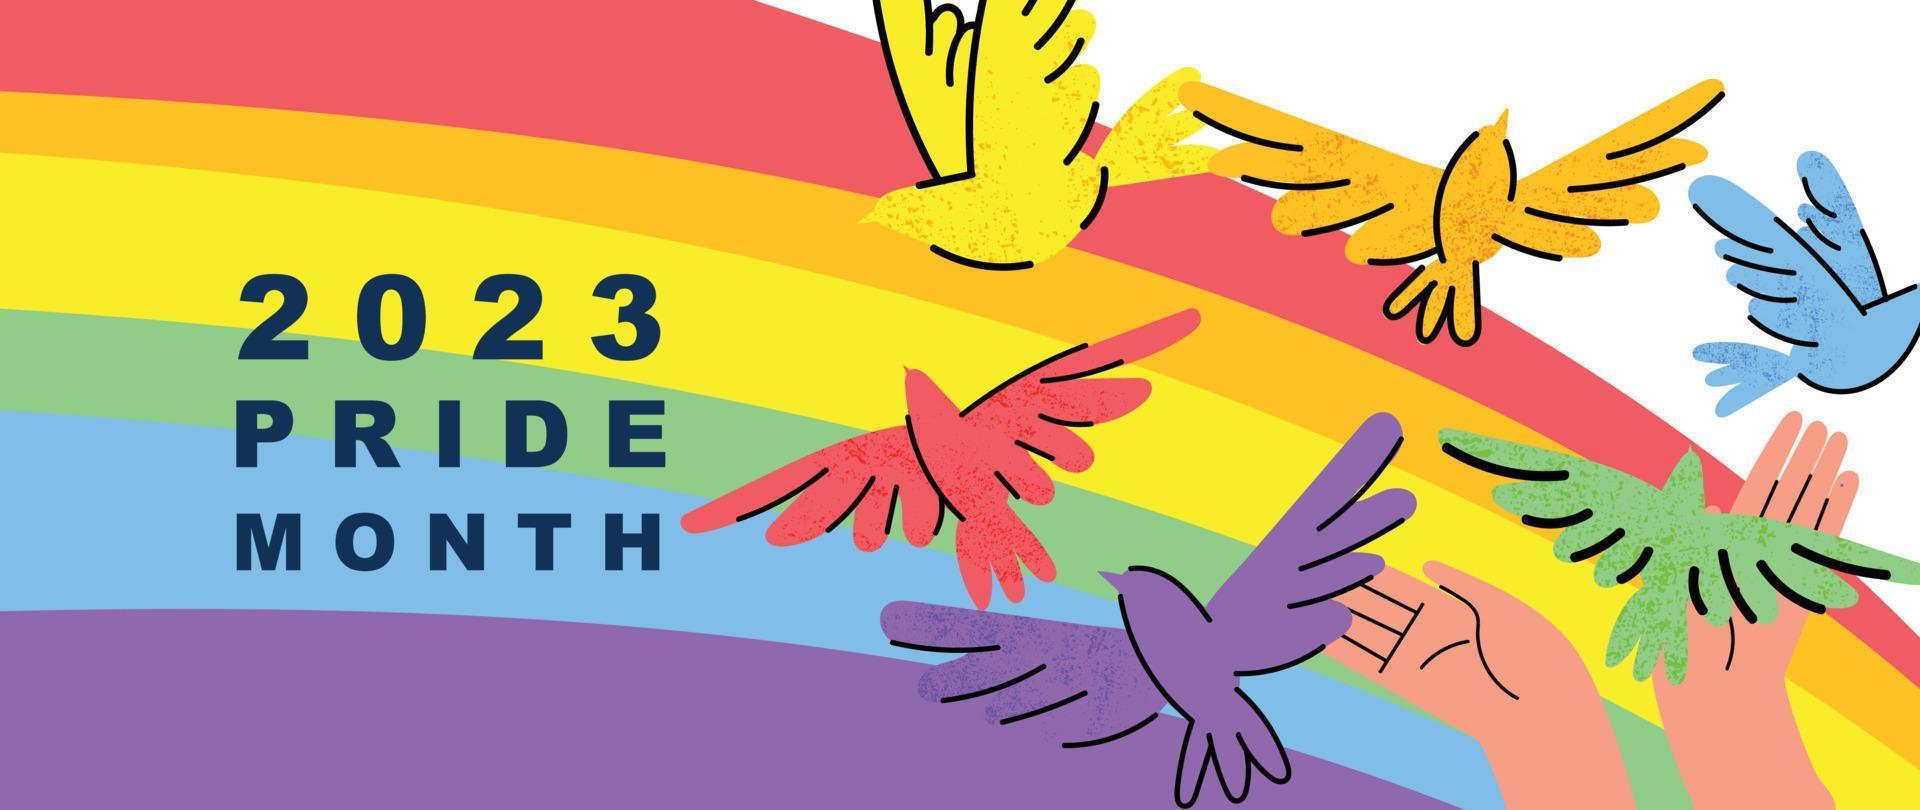 contento orgullo mes antecedentes. lgbtq comunidad símbolos con arcoíris, pájaro, mano signo. diseño para celebracion en contra violencia, bisexual, Transgénero, género igualdad, derechos concepto. vector